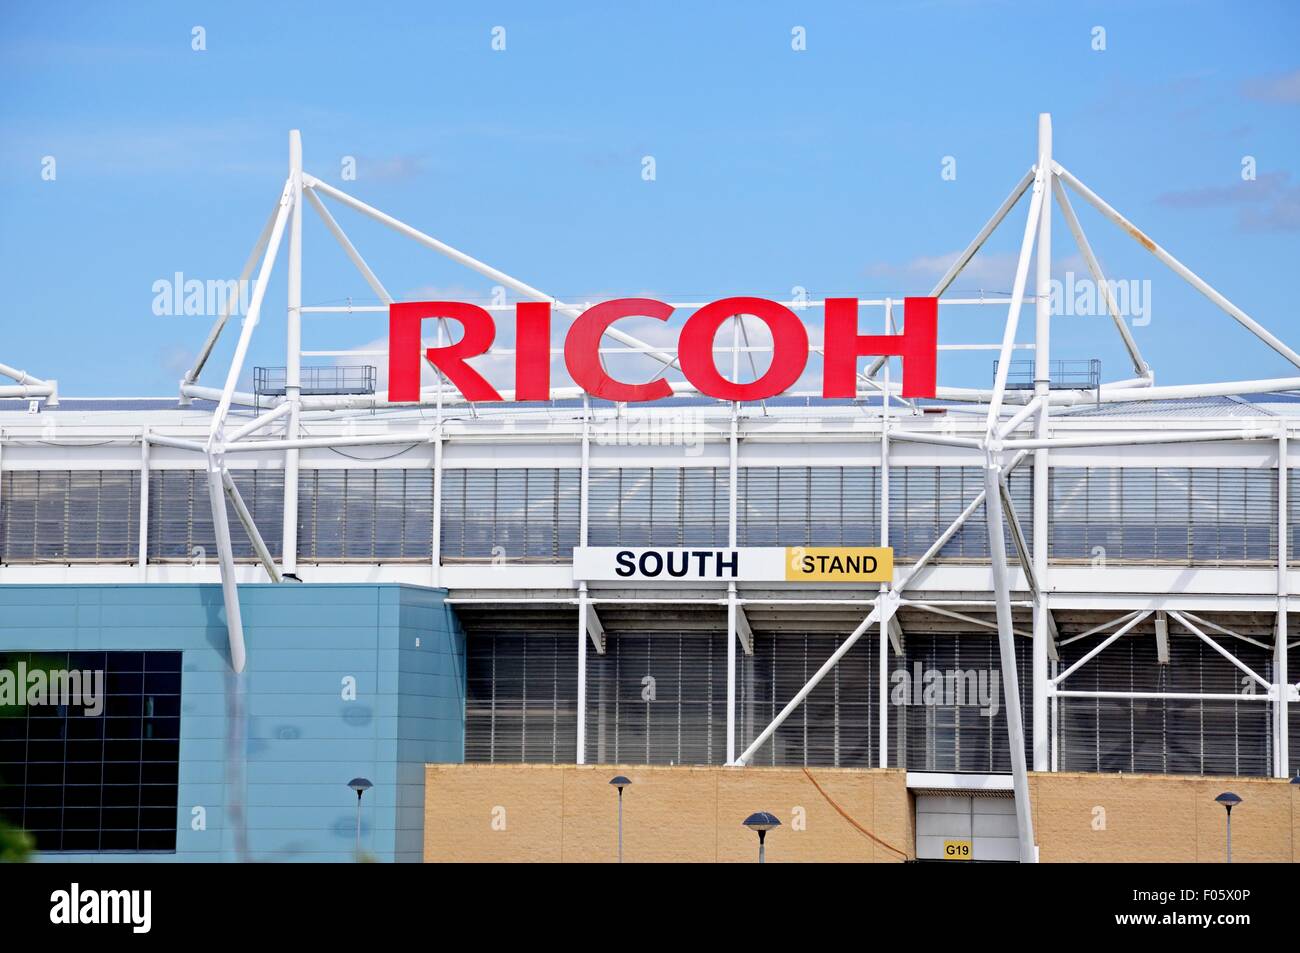 Vue sur le stade Ricoh Arena, Coventry, West Midlands, England, UK, Europe de l'Ouest. Banque D'Images